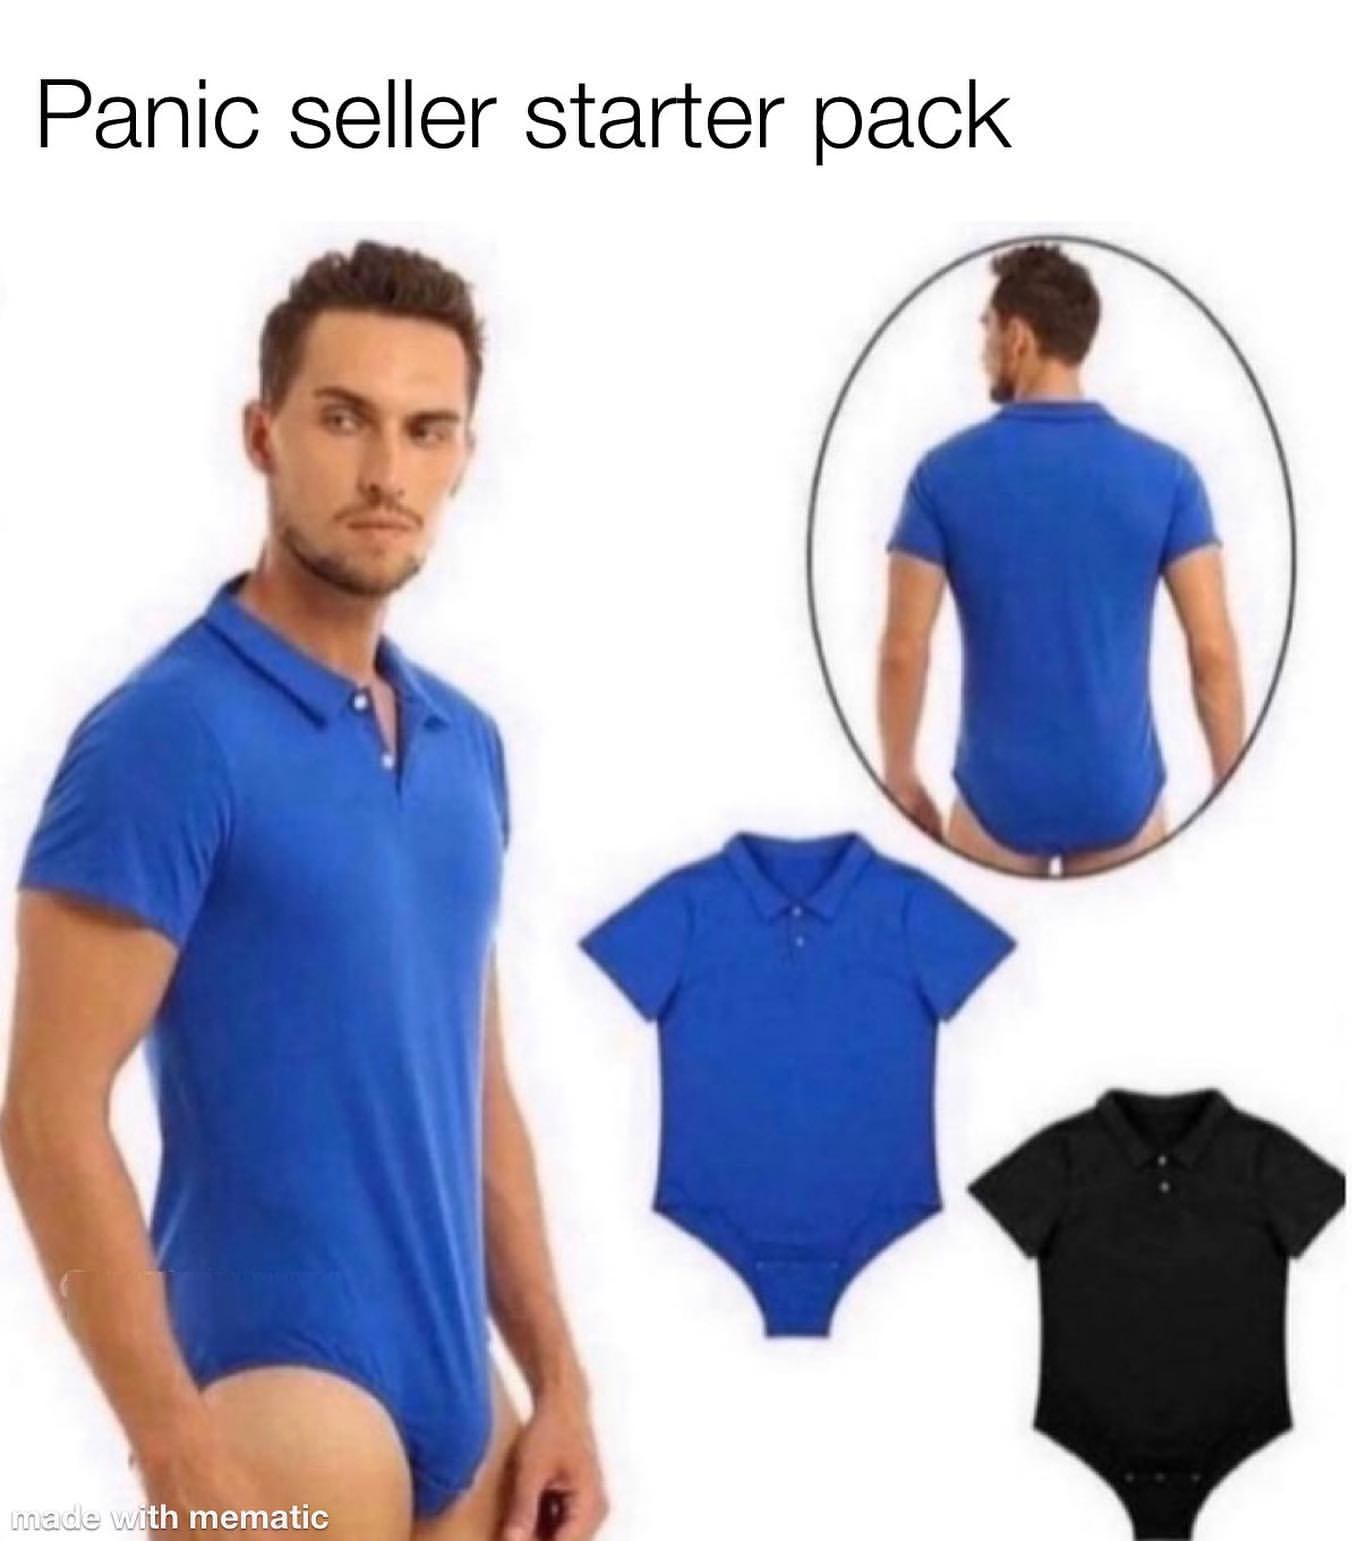 Panic seller starter pack.